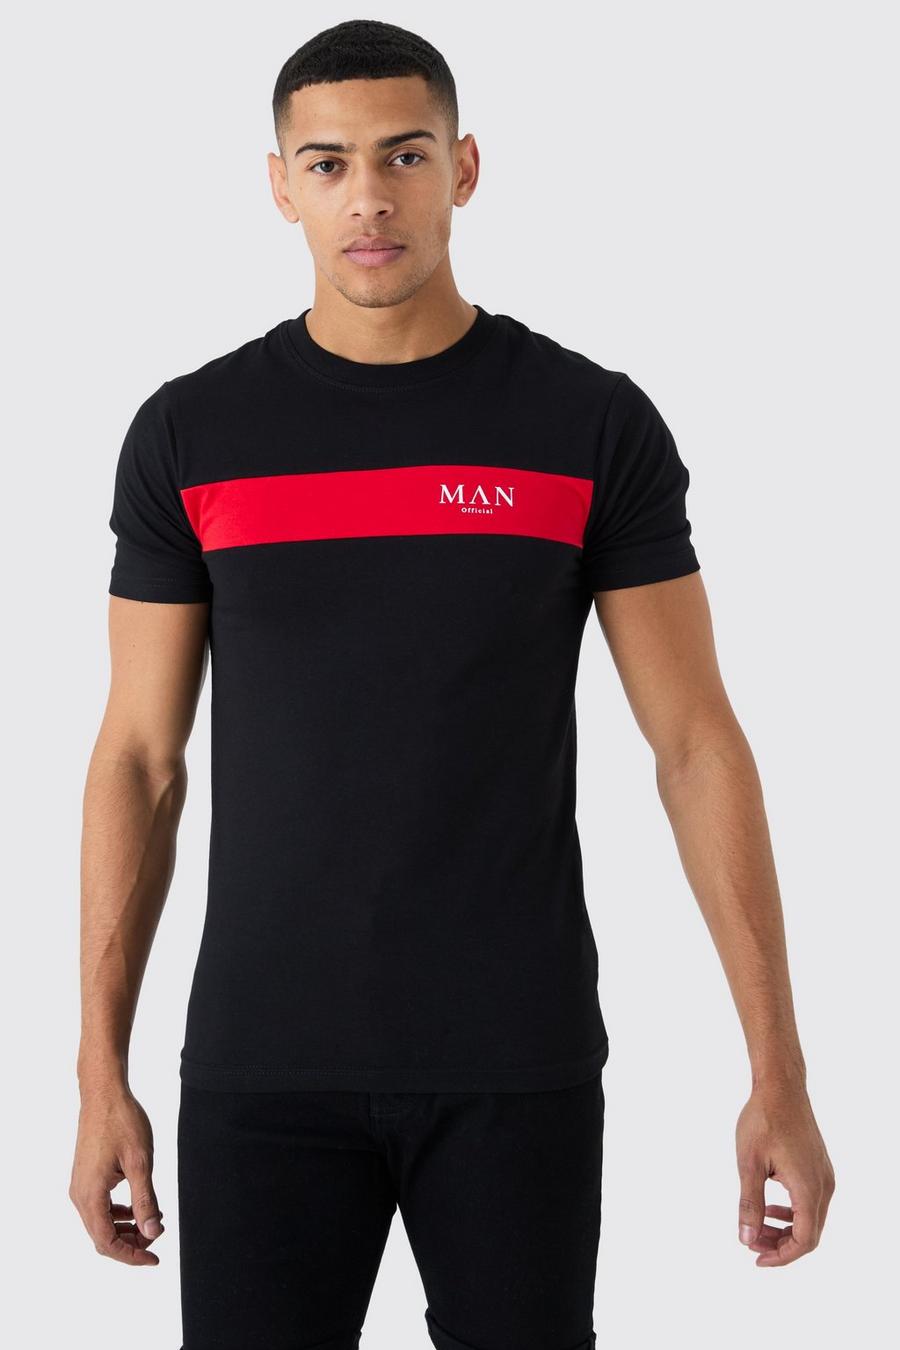 Camiseta MAN con letras romanas ajustada al músculo con colores en bloque, Black